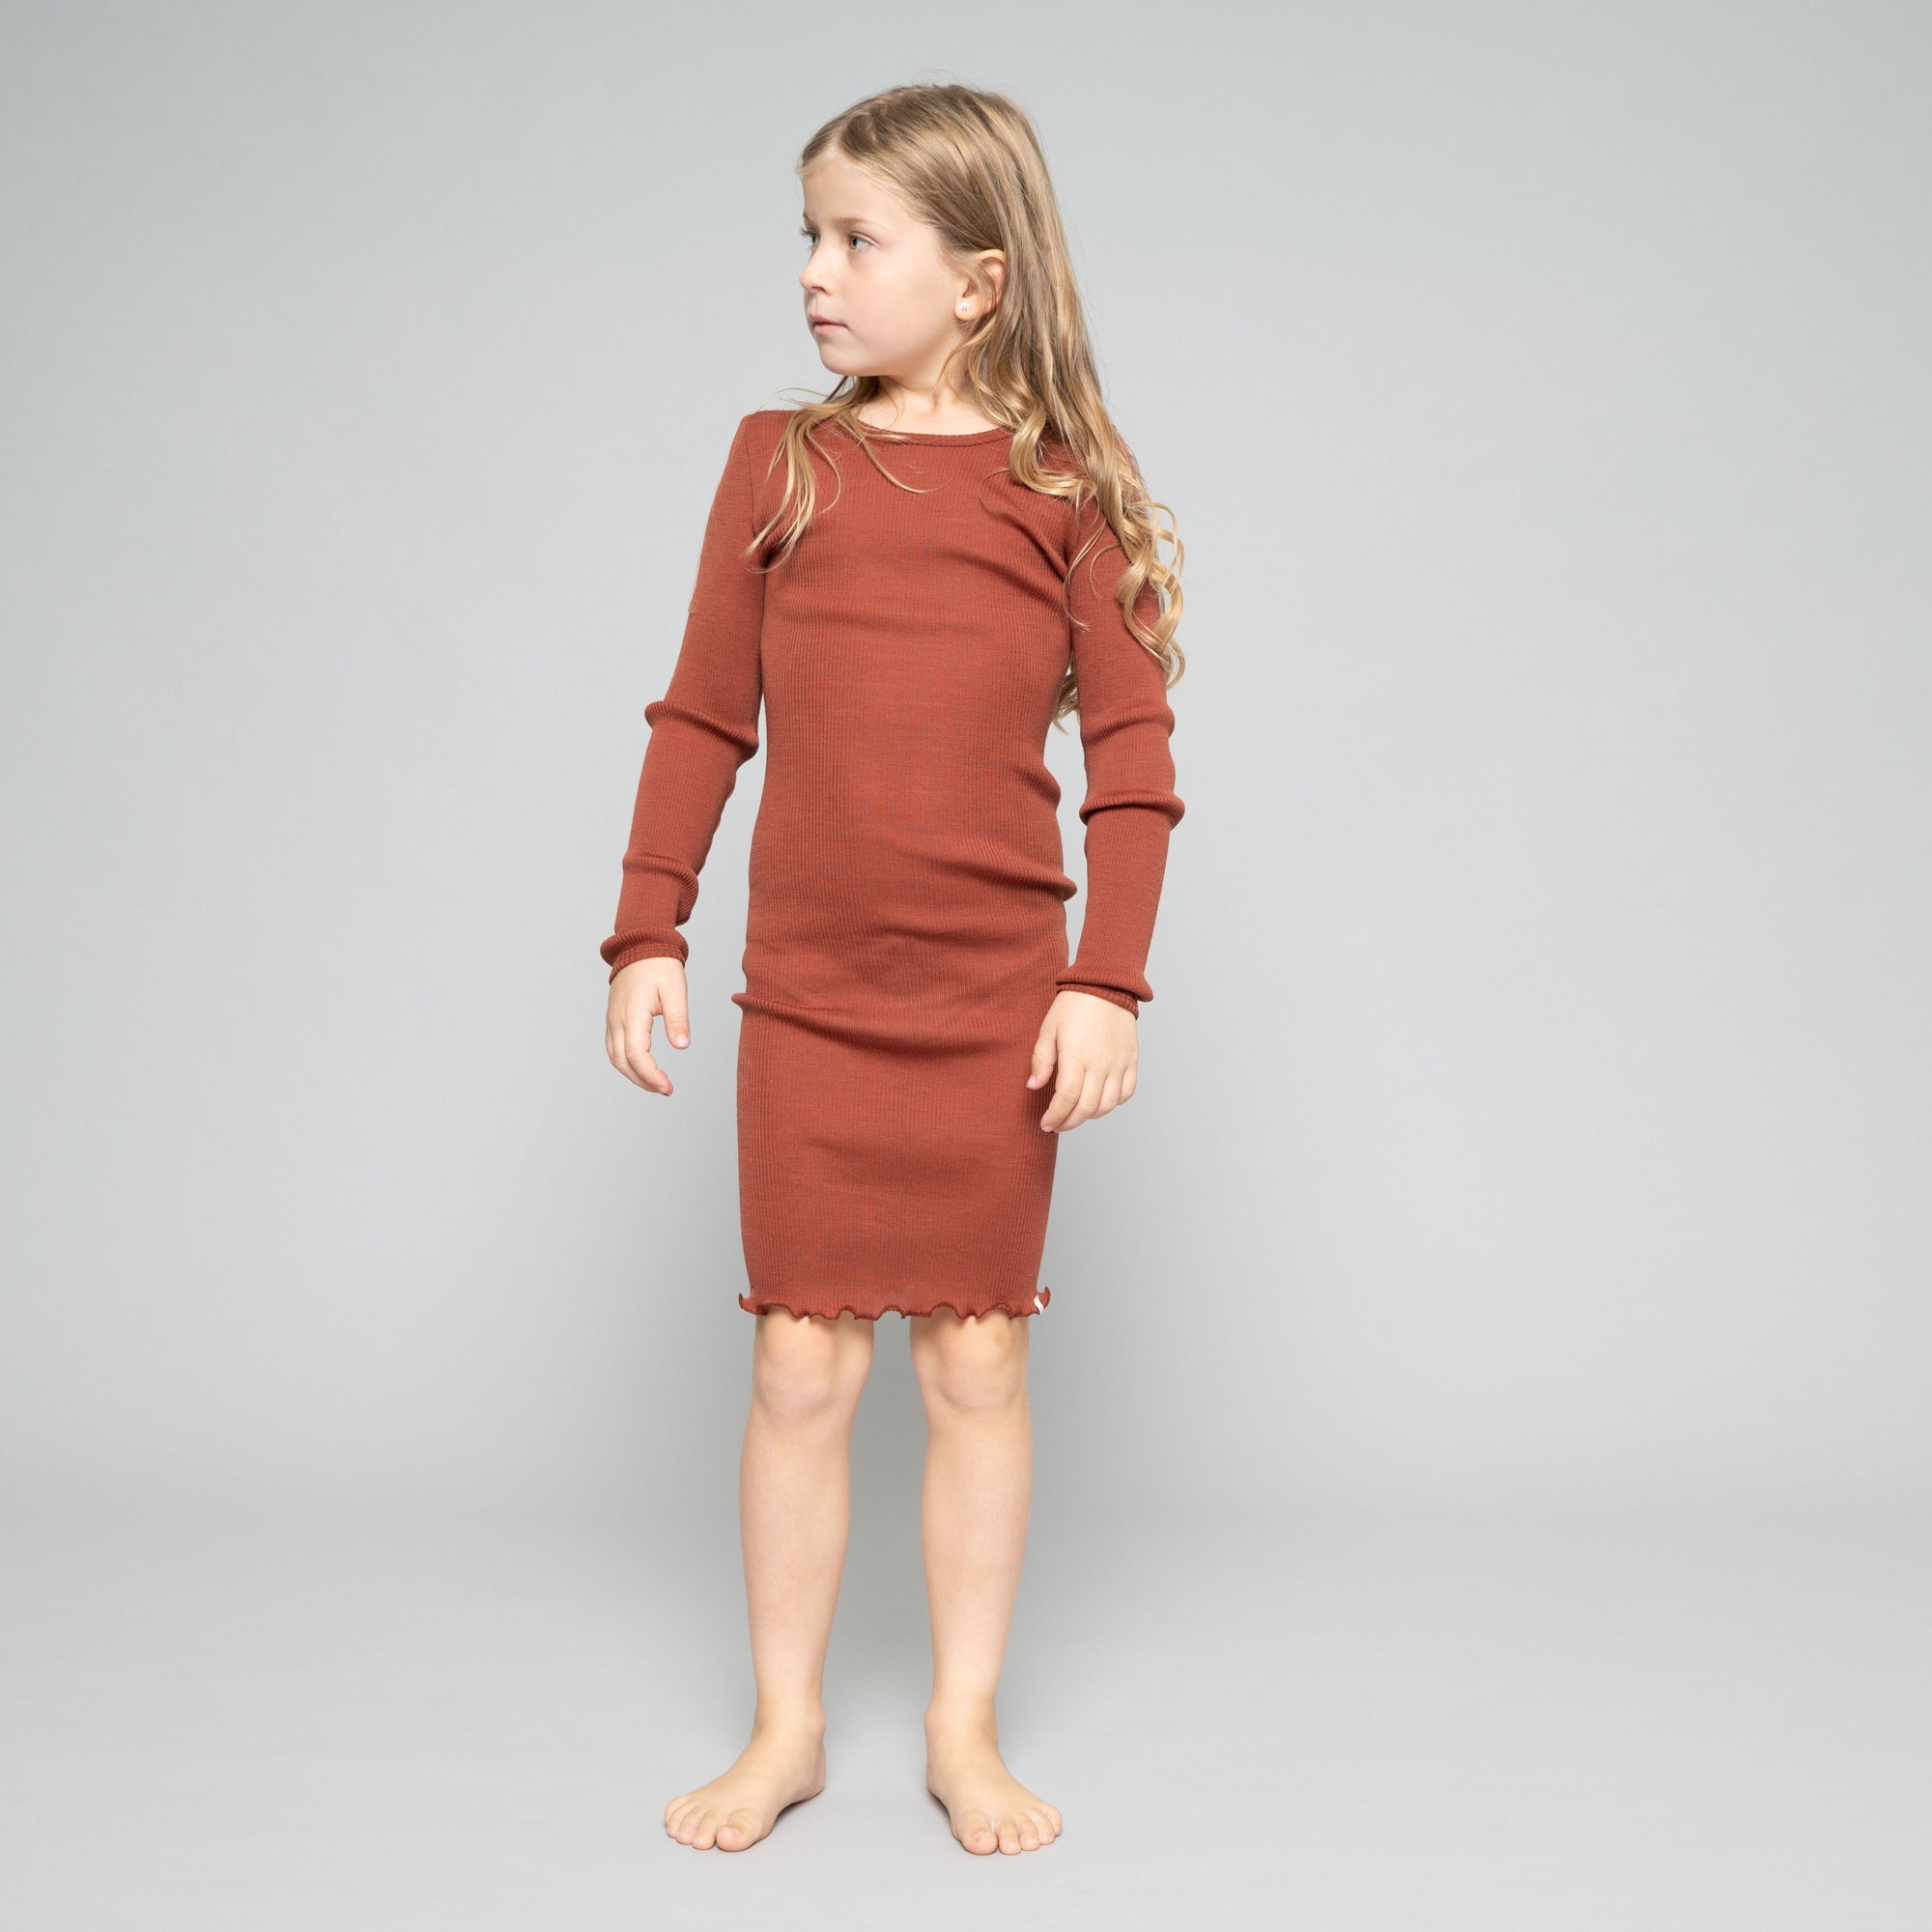 Child's Merino Rib Dress - Rhubarb (5-6y) *Last One!